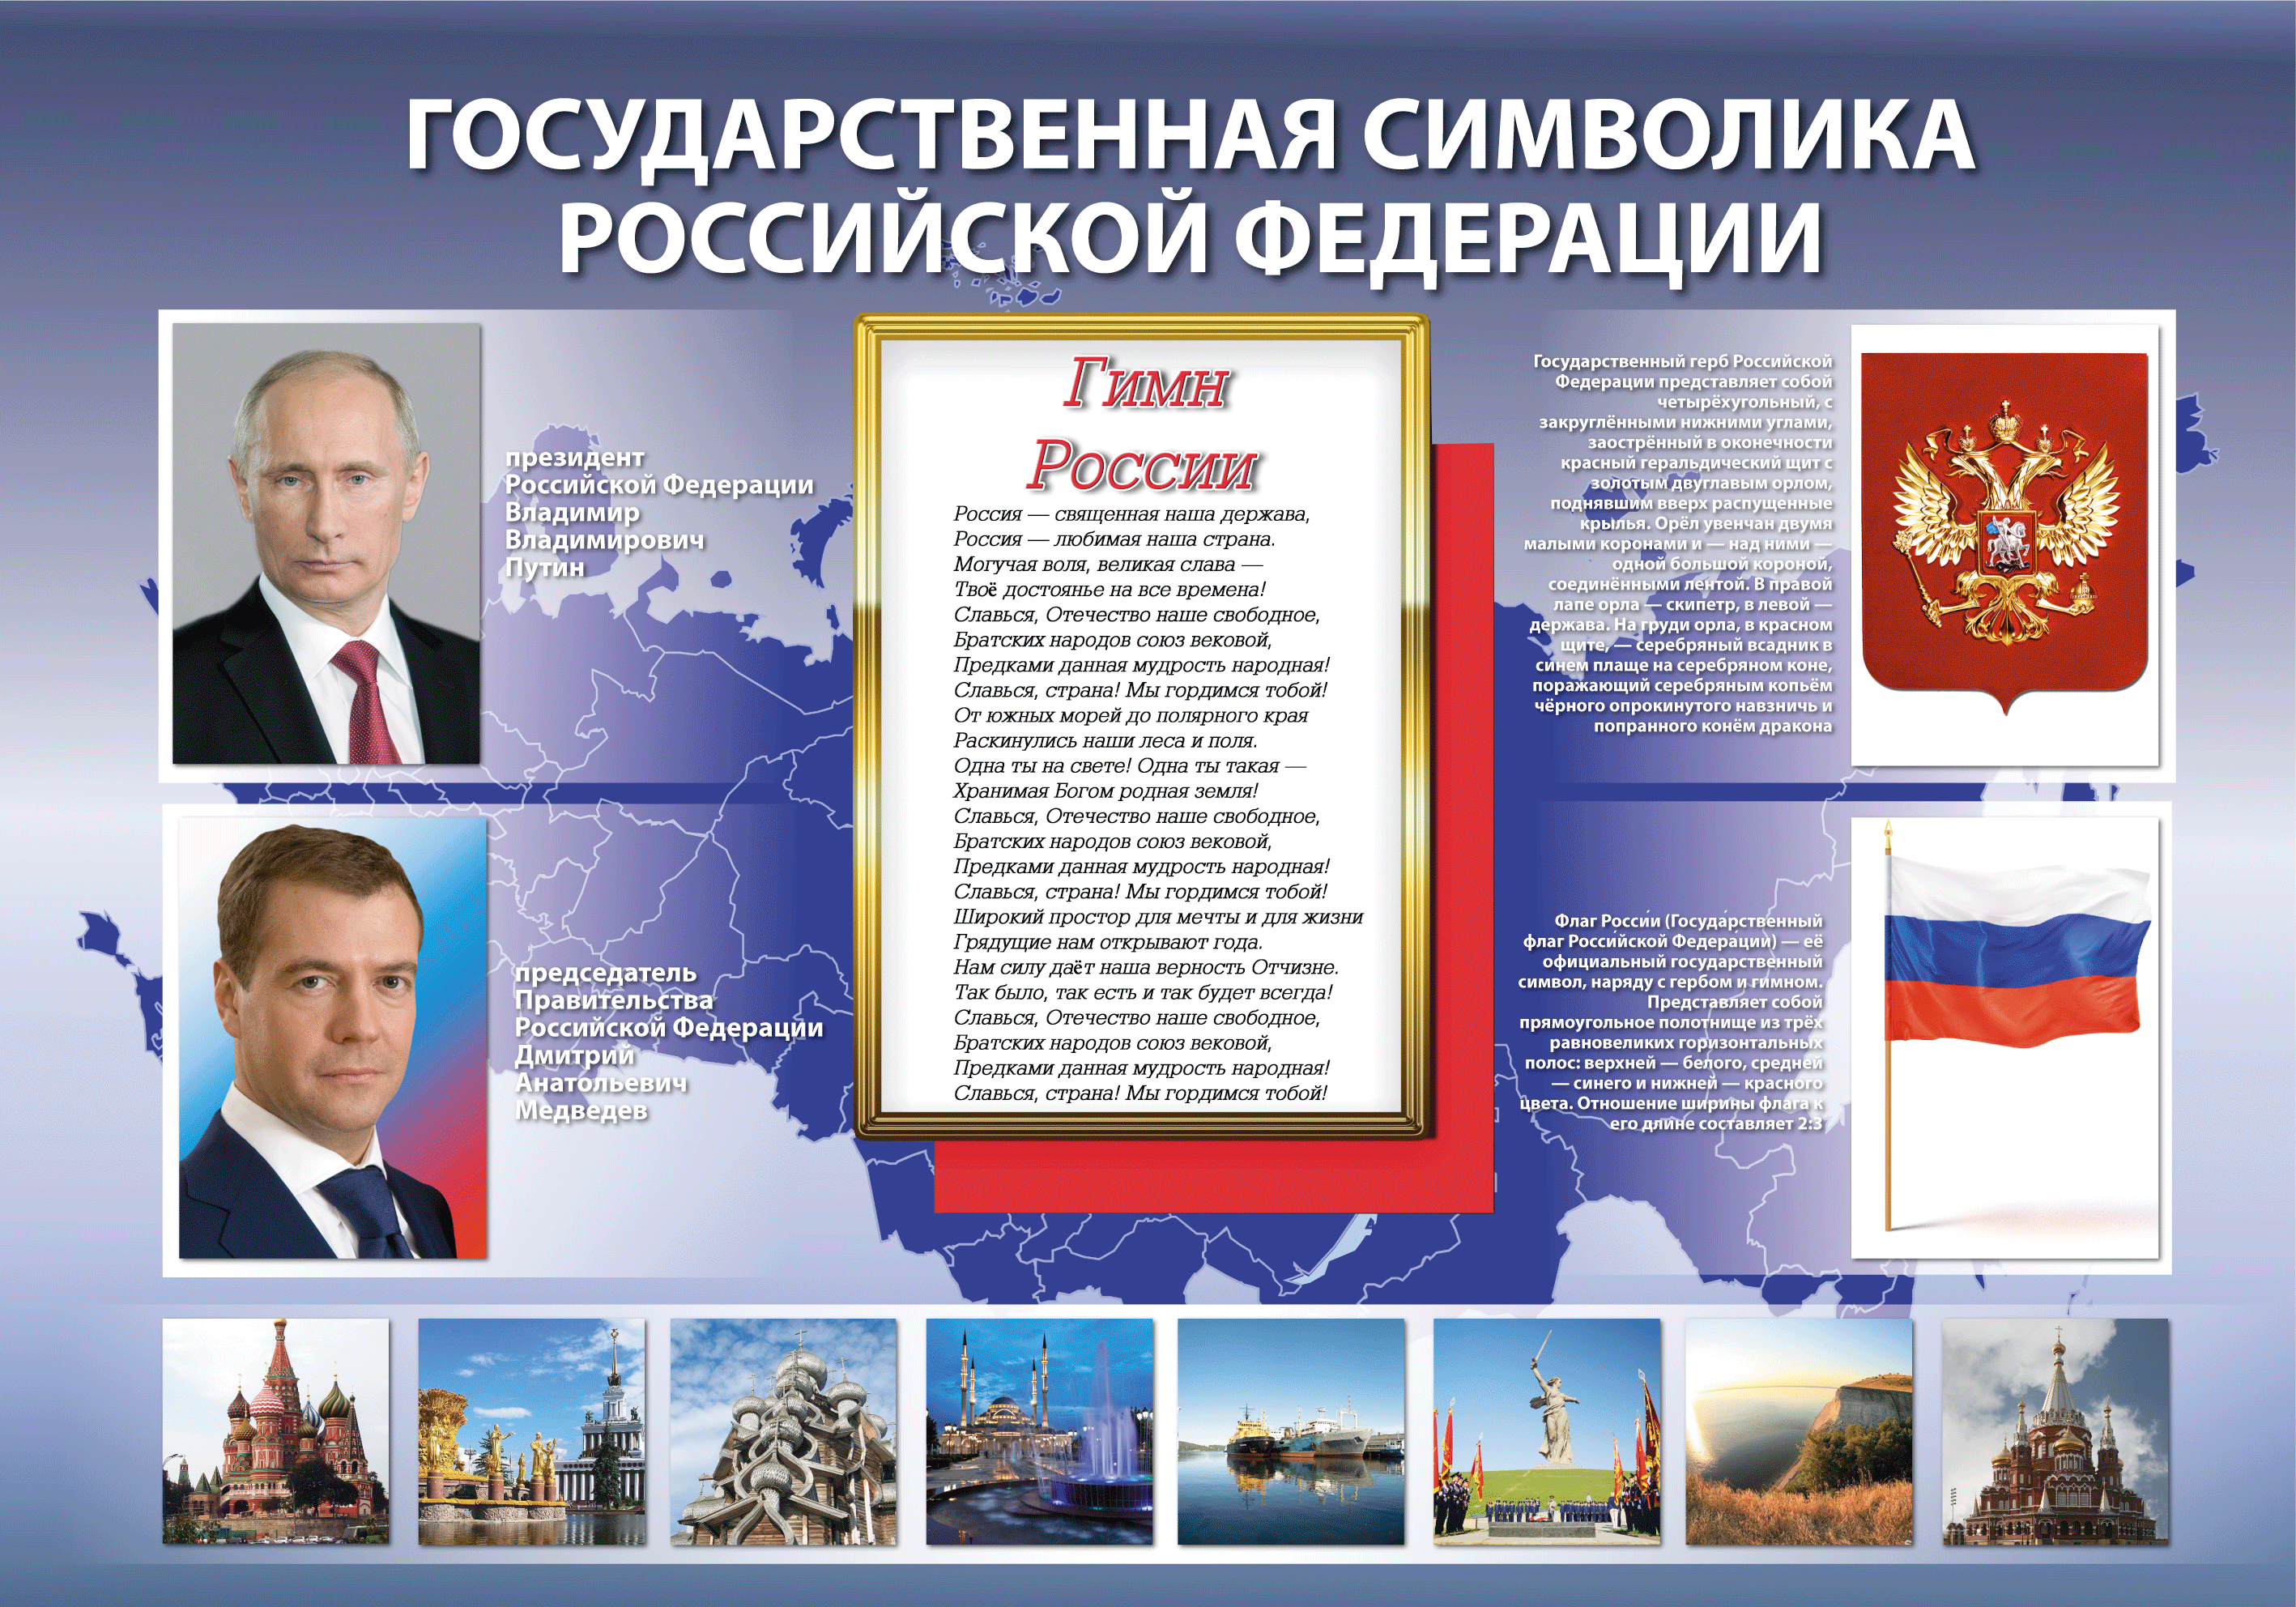 Произведения российской федерации. Плакат с государственной символикой.